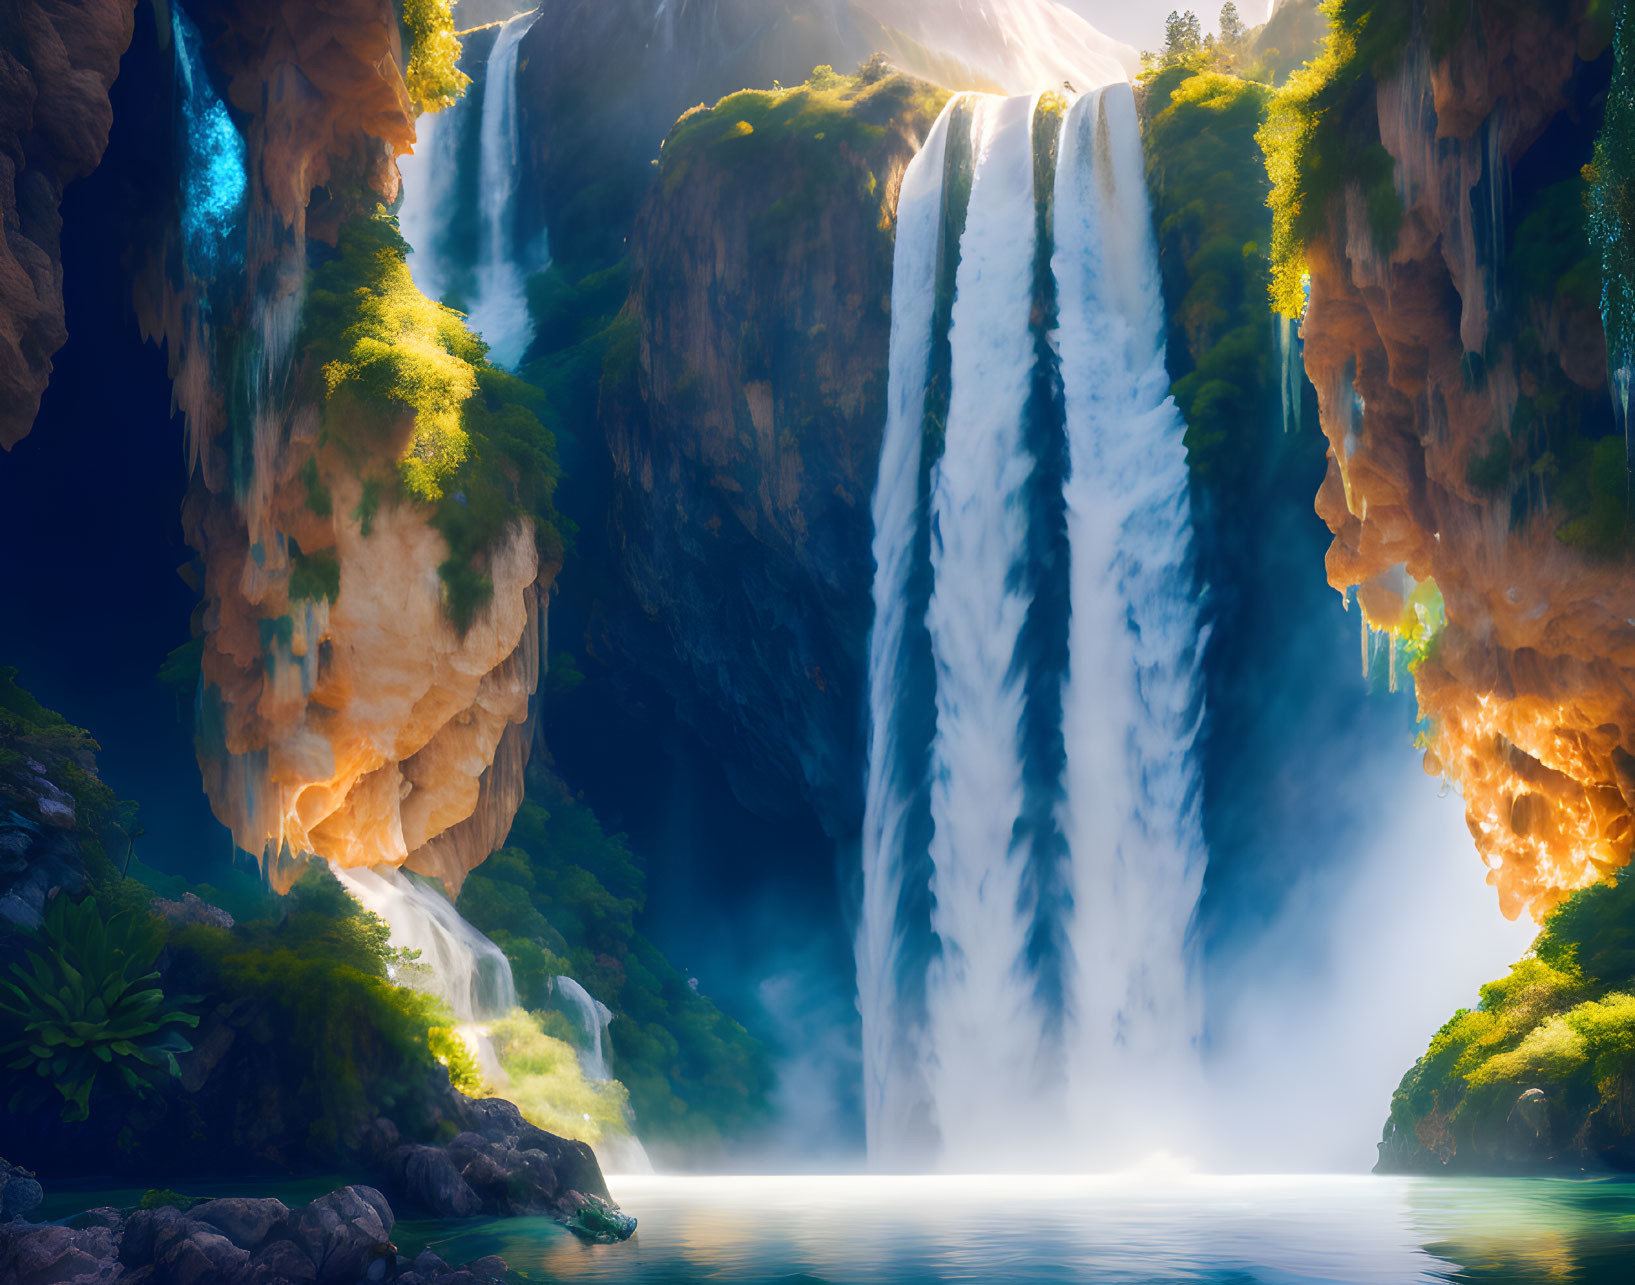 Majestic double waterfall in serene fantasy landscape